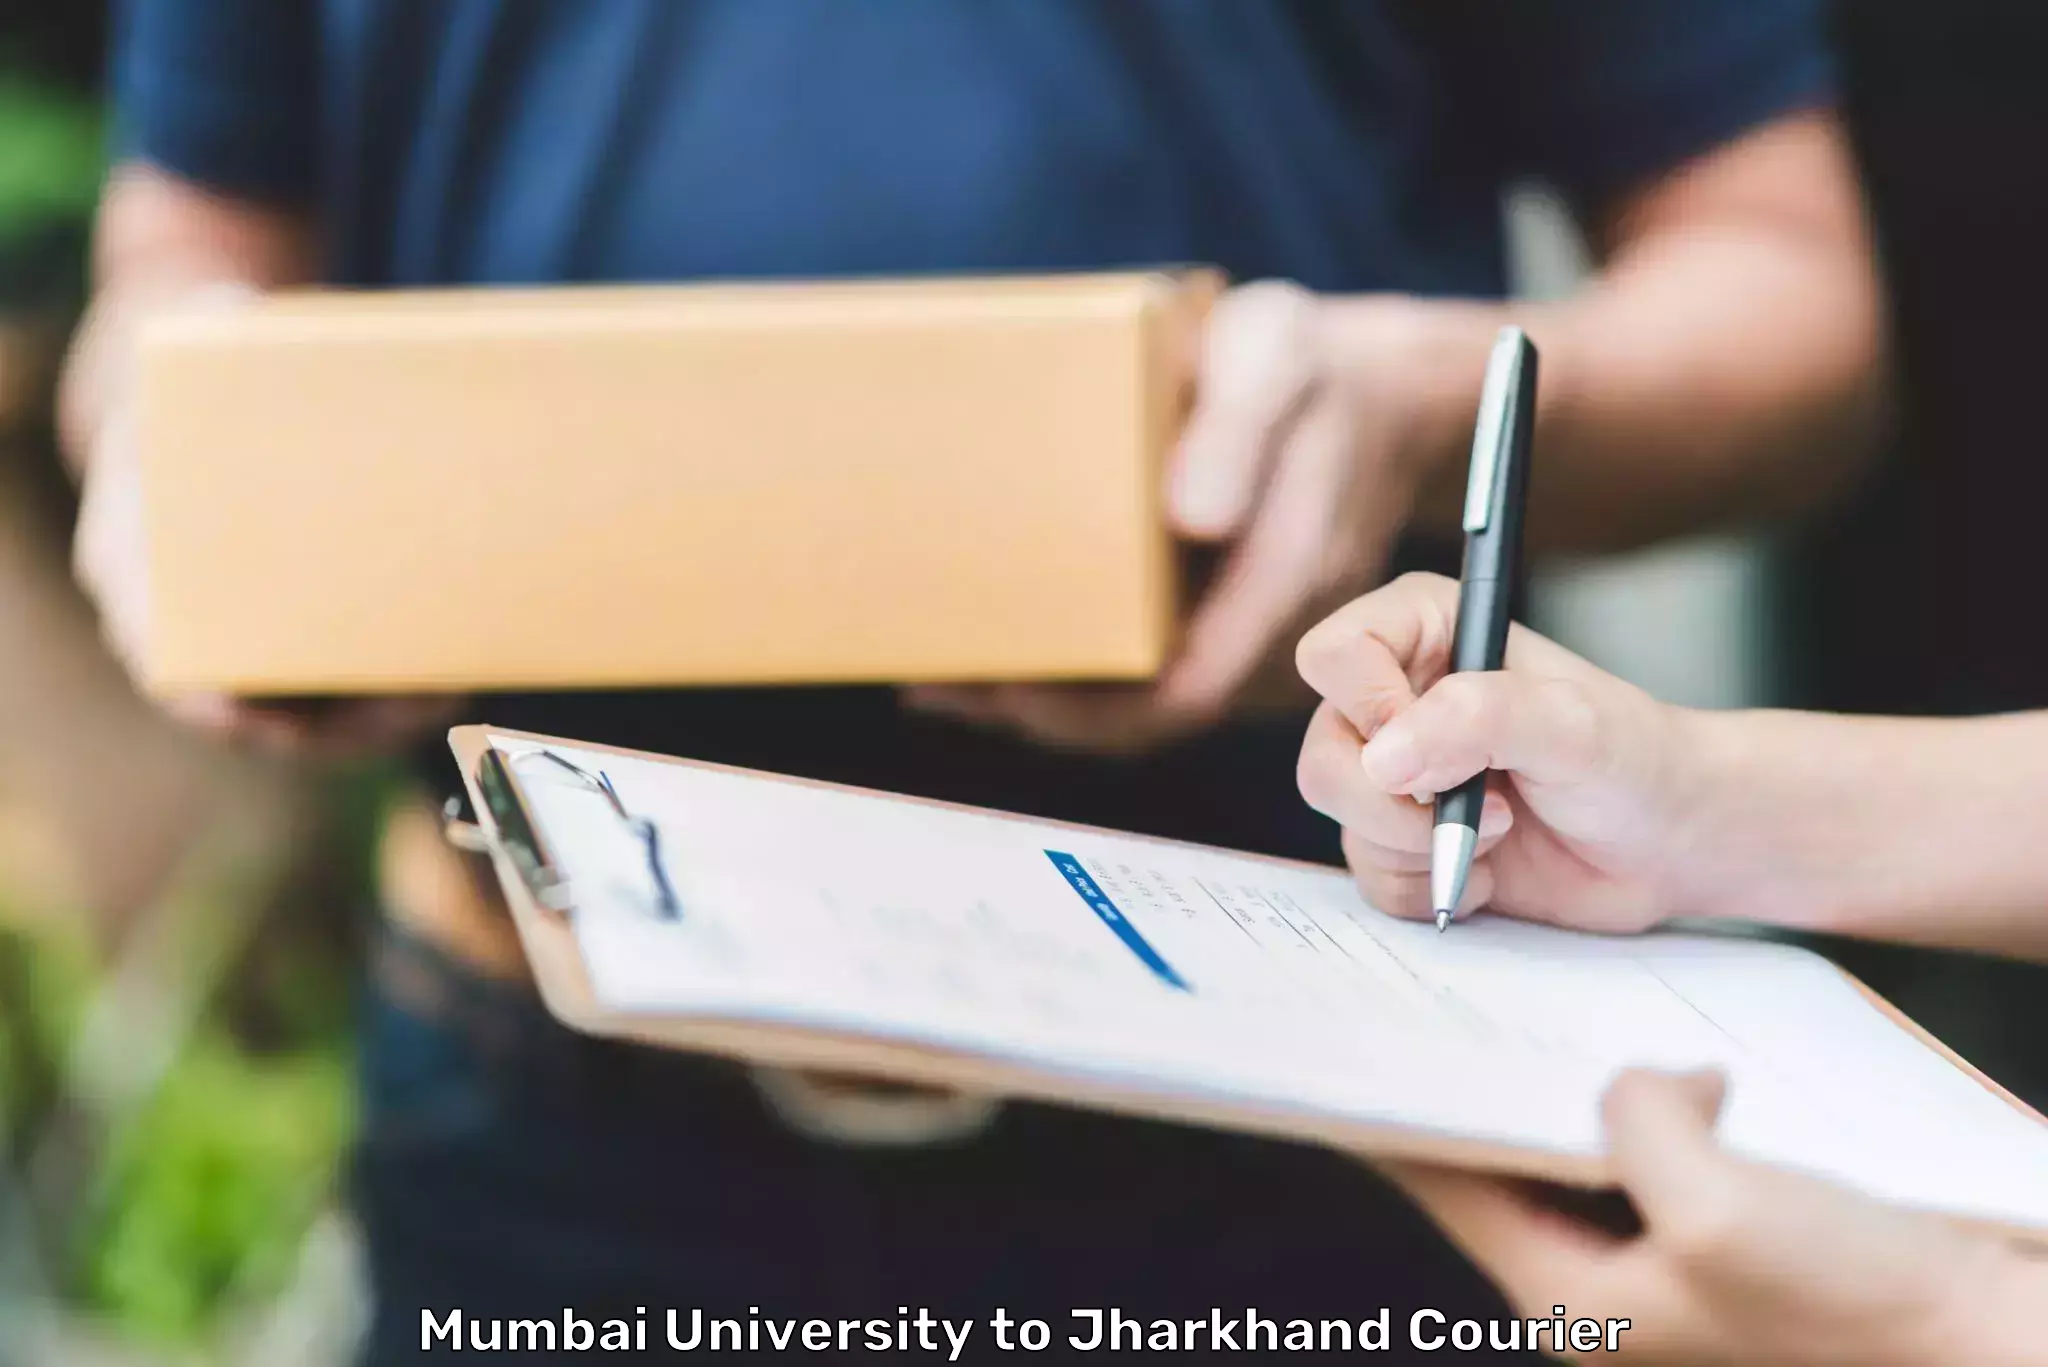 Special handling courier Mumbai University to Phusro